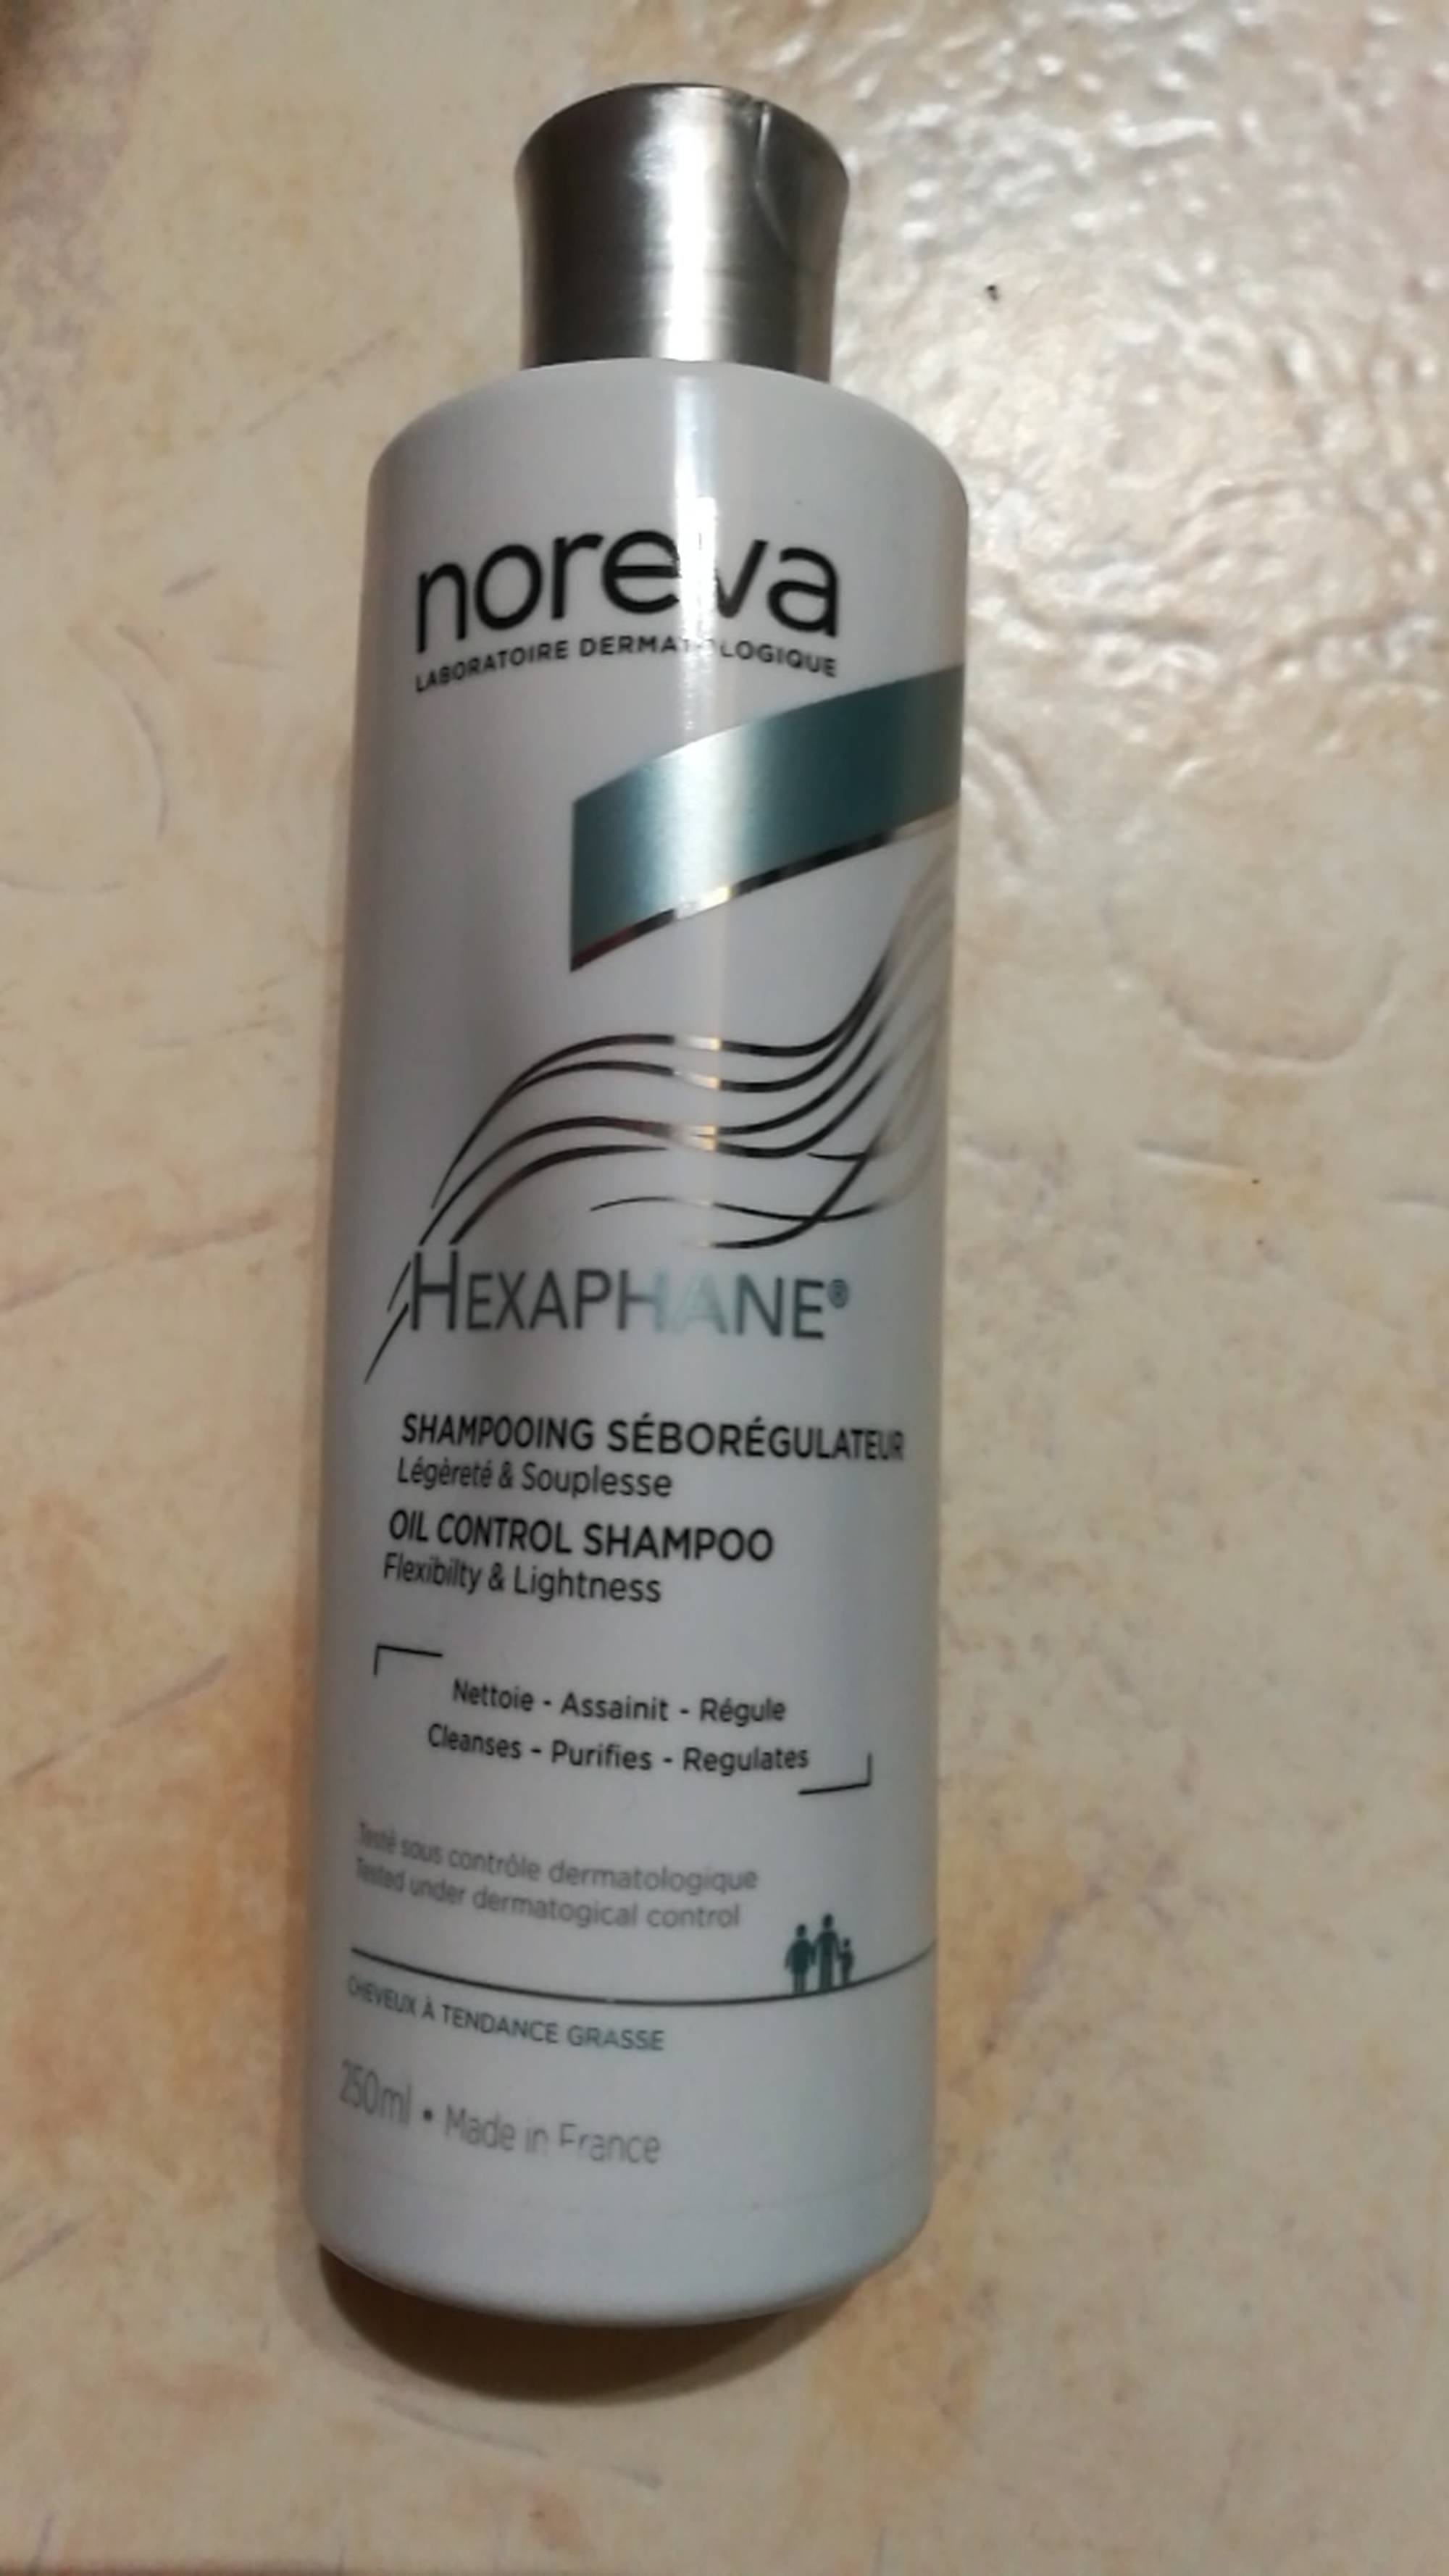 NOREVA - Hexaphane - Shampooing séborégulateur 